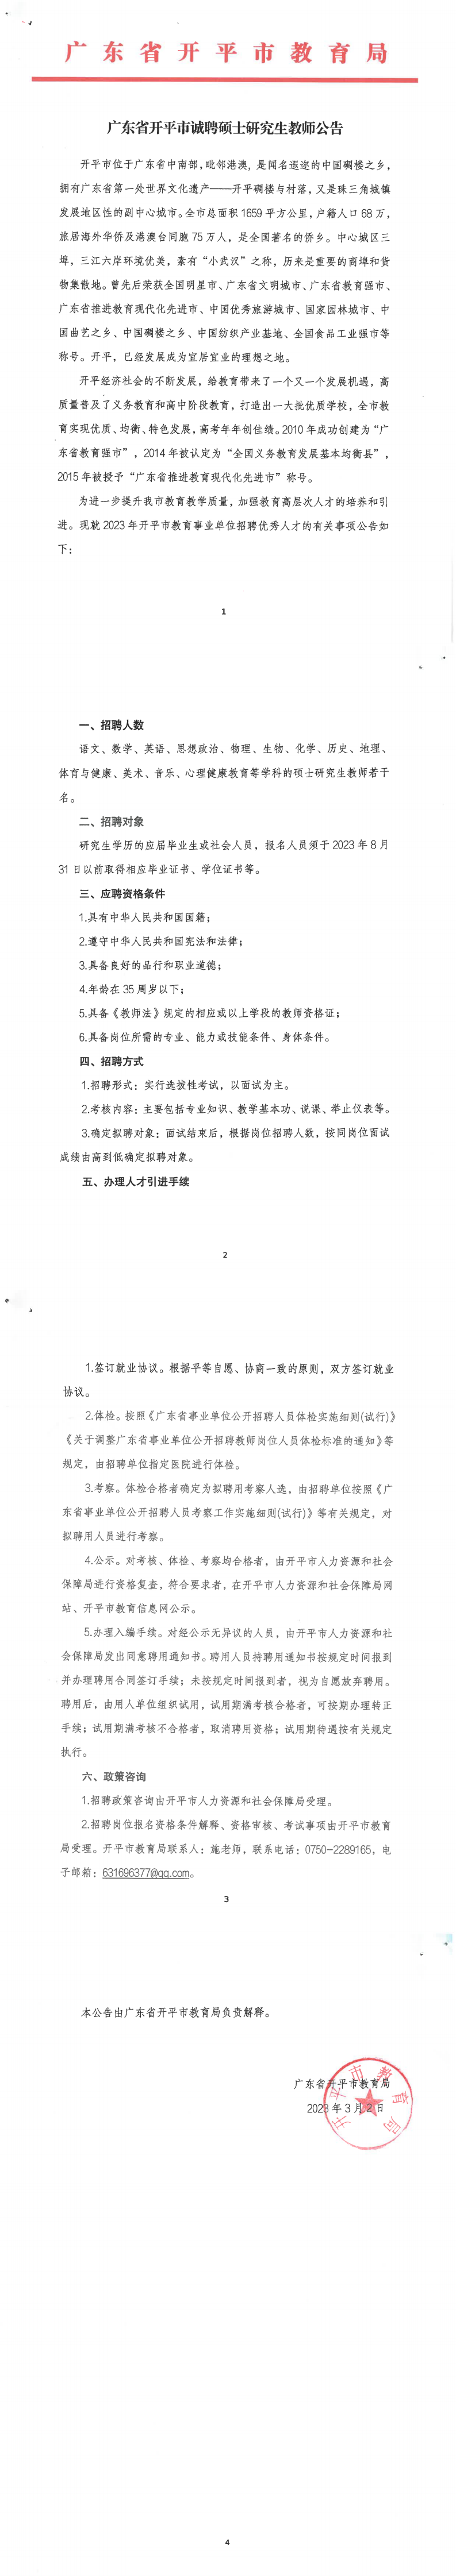 2023年3月广东省开平市诚聘硕士研究生教师公告